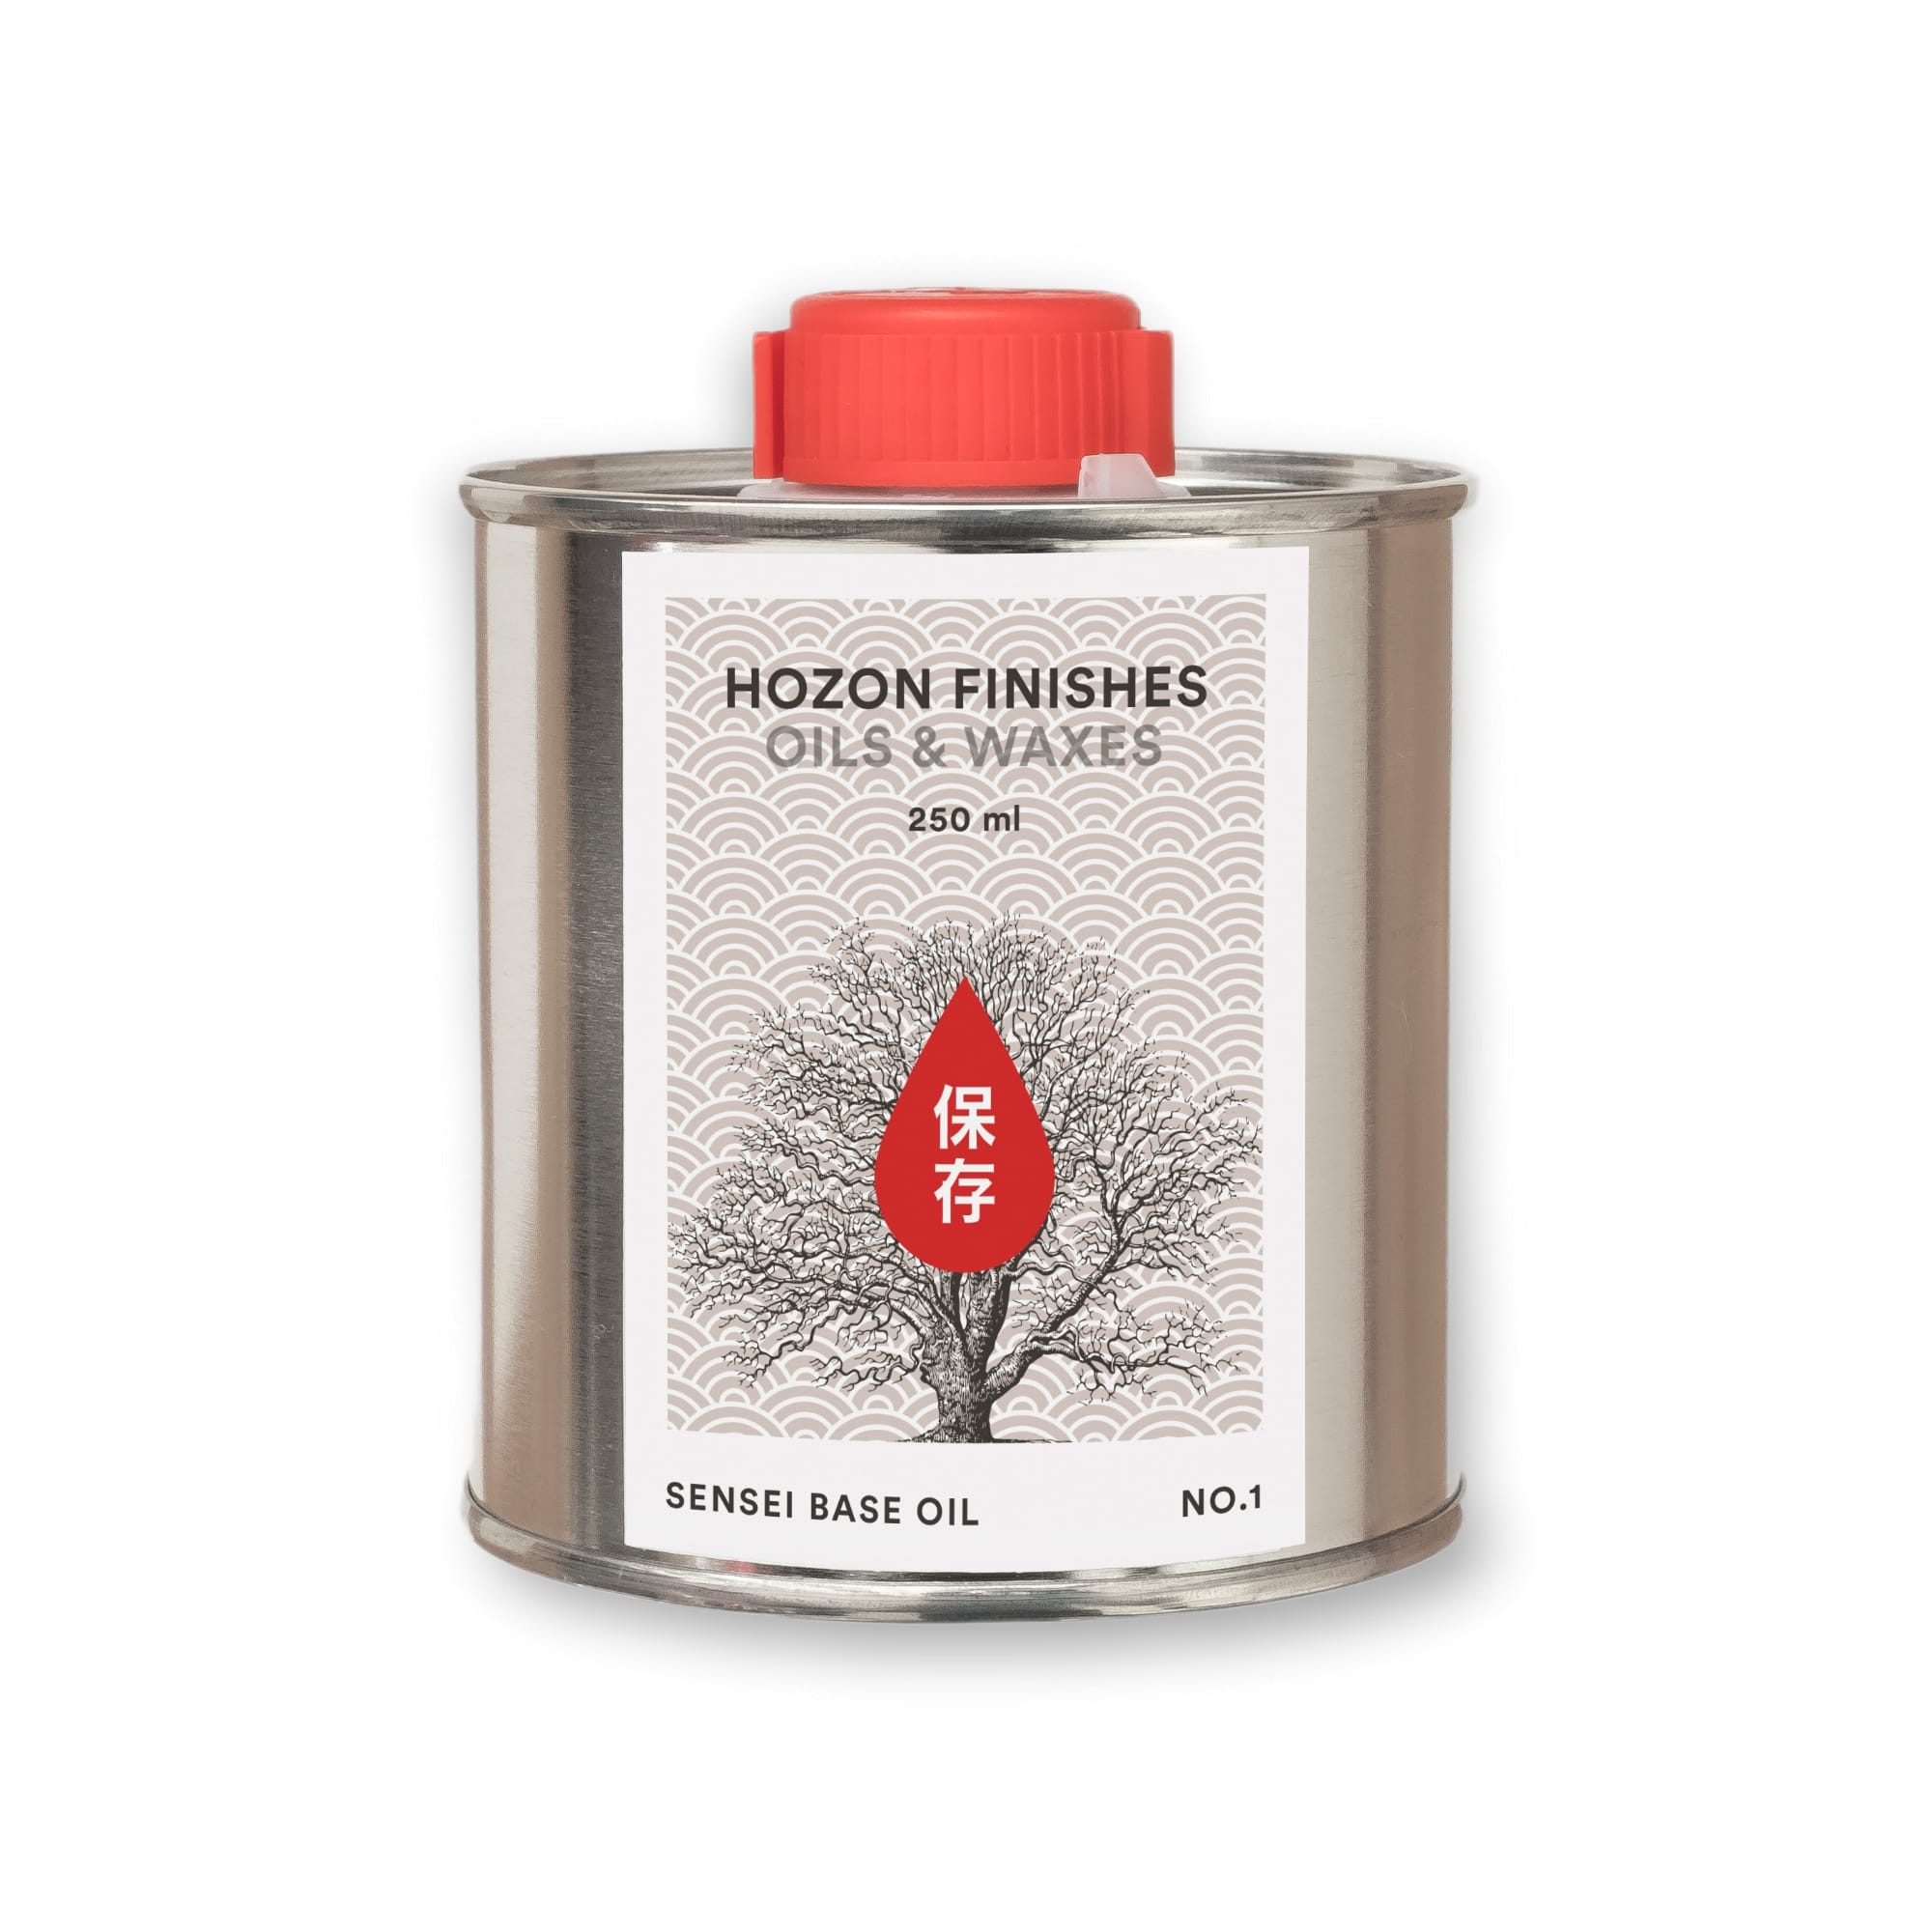 Hozon Finishes - Sensei Base Oil (250 ml)